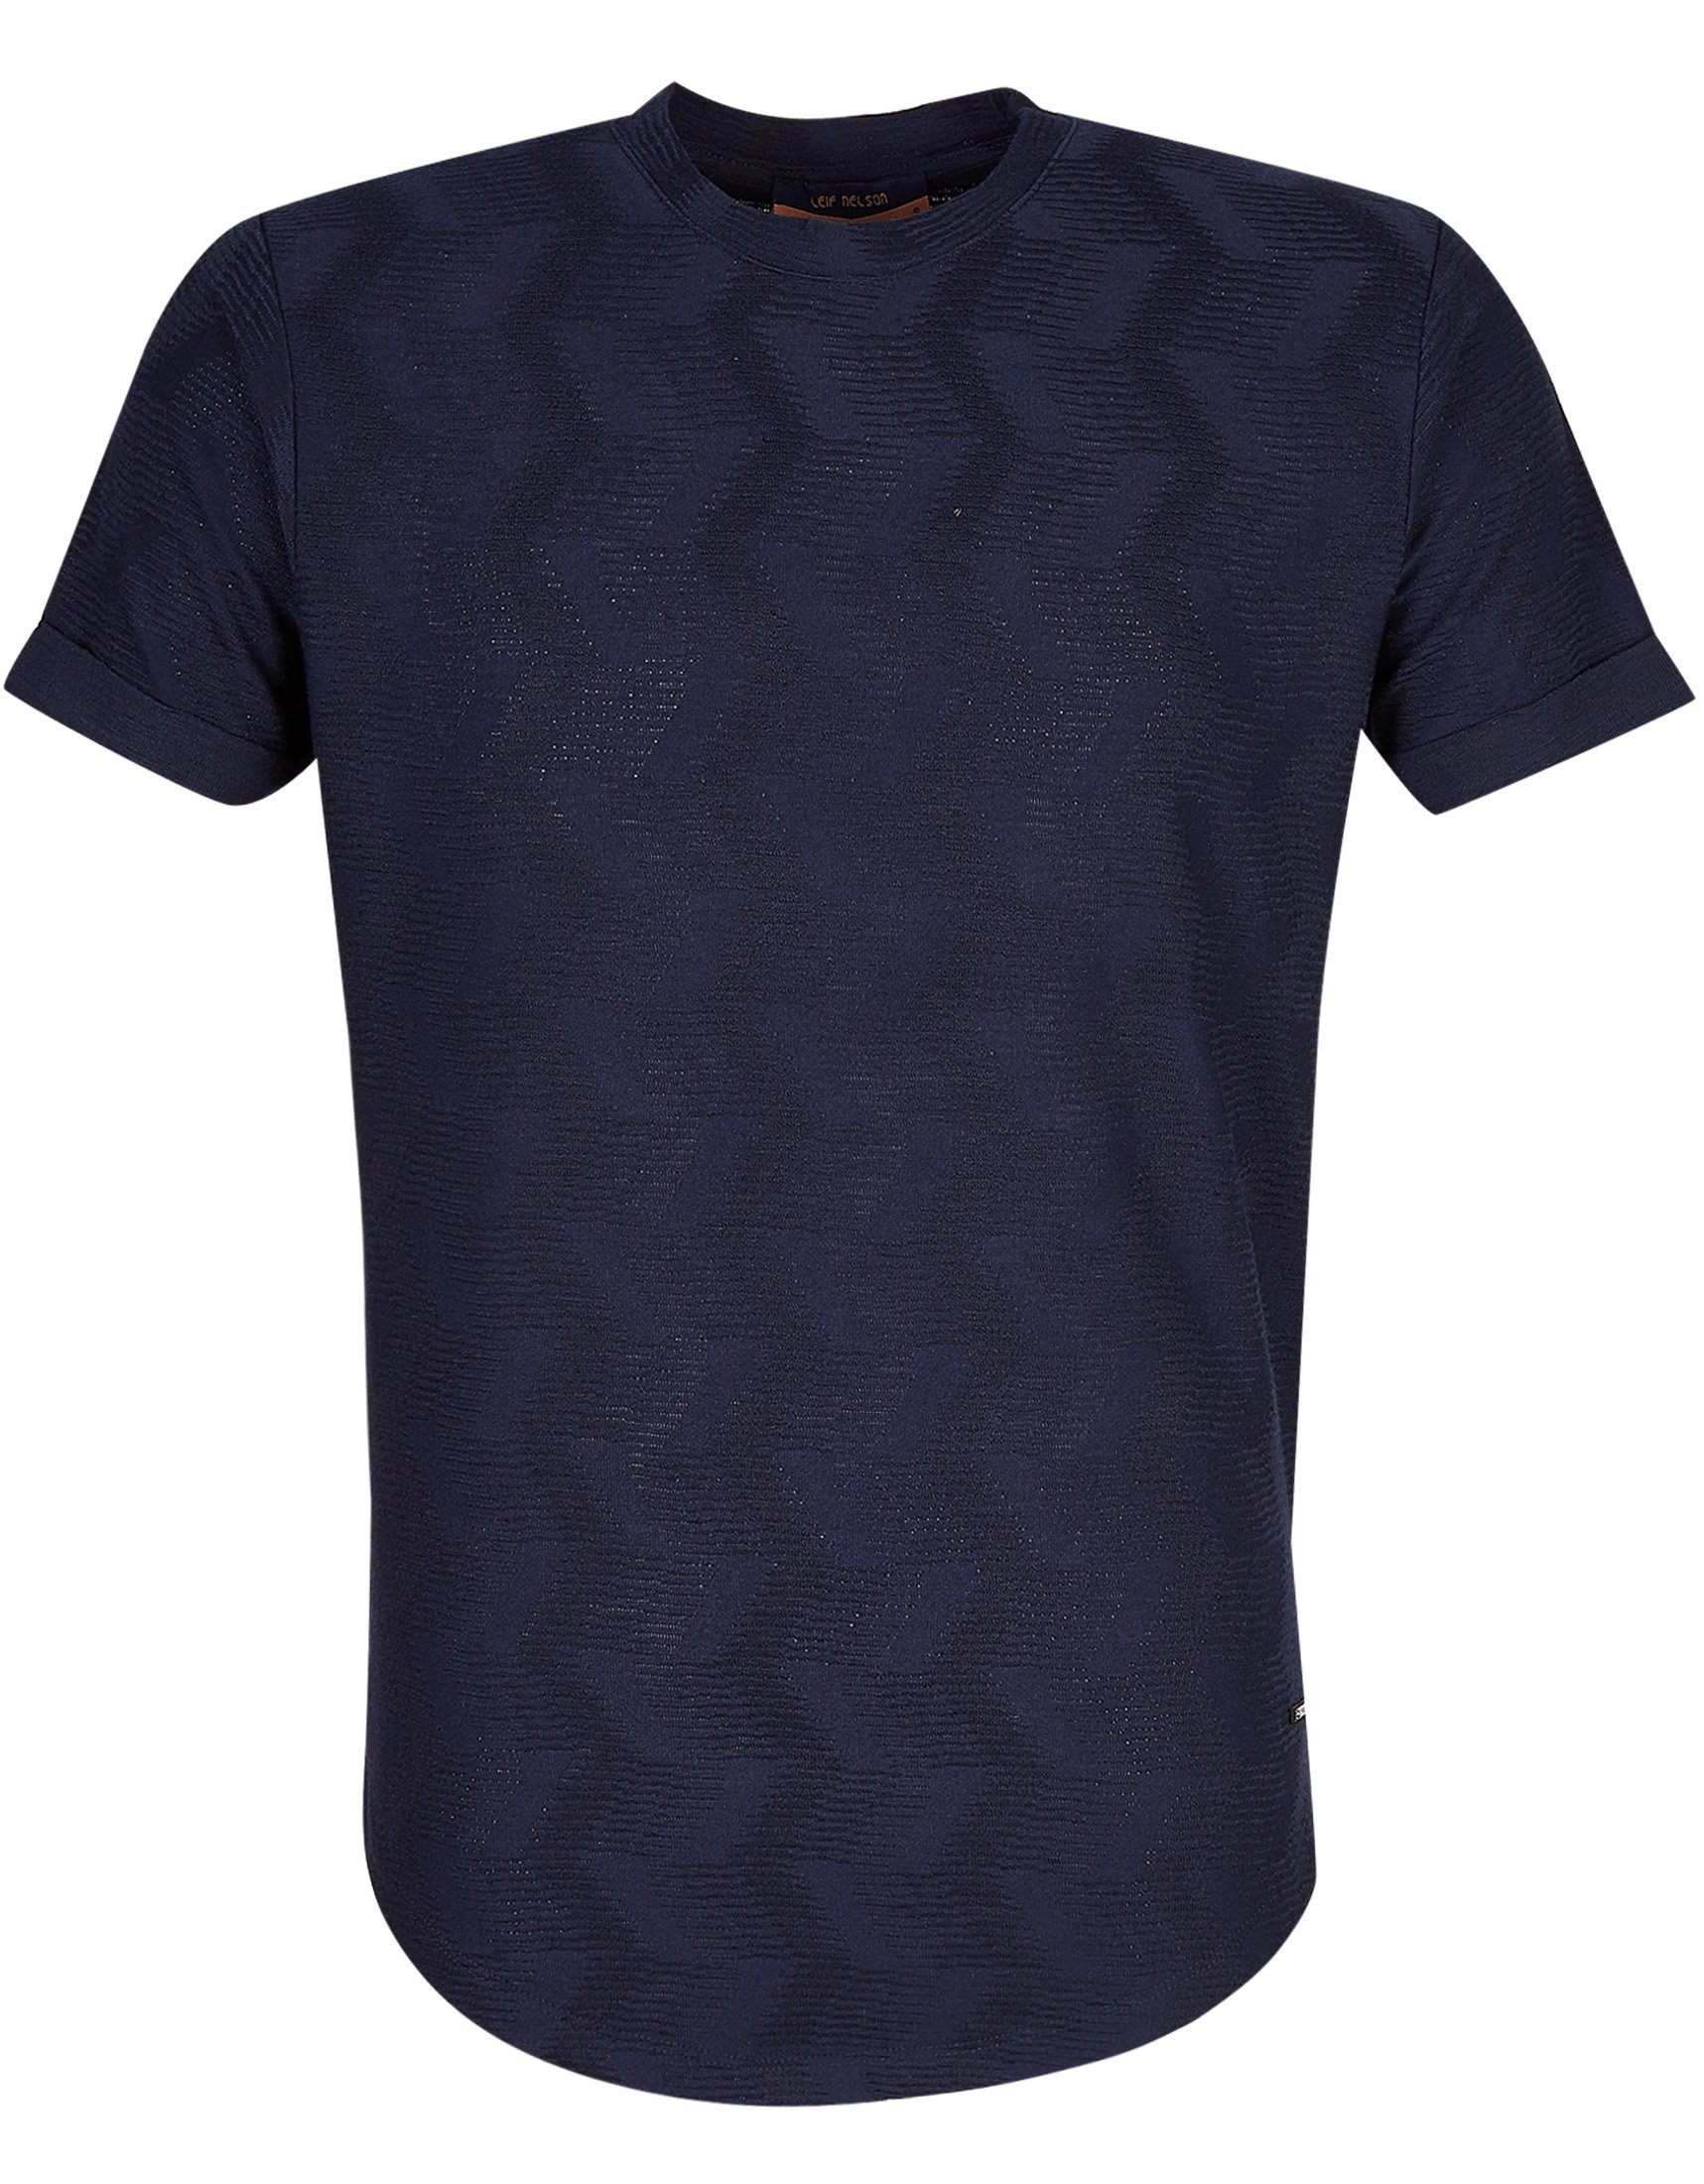 Leif Nelson T-Shirt Herren blau normal T-Shirt Rundhals LN-55585